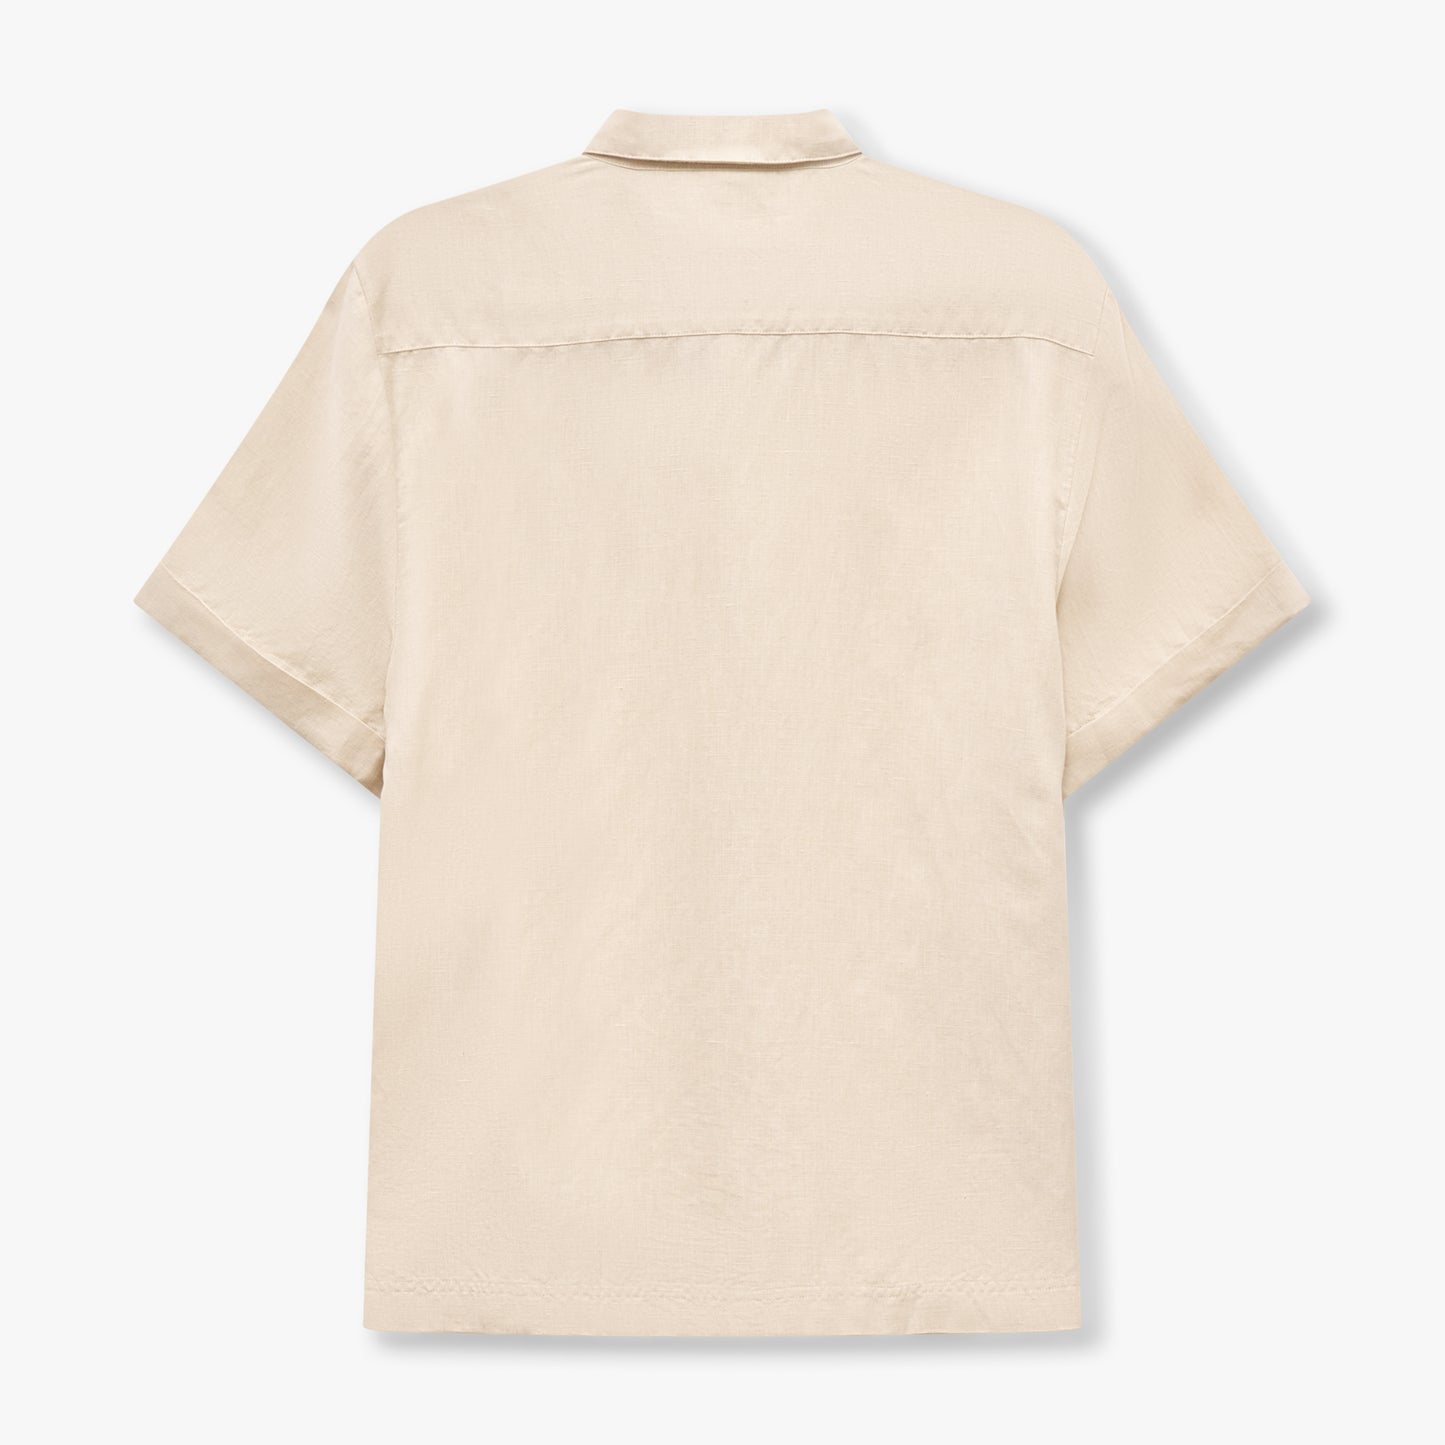 REWEAR Linen Mix Shirt - Oatmeal